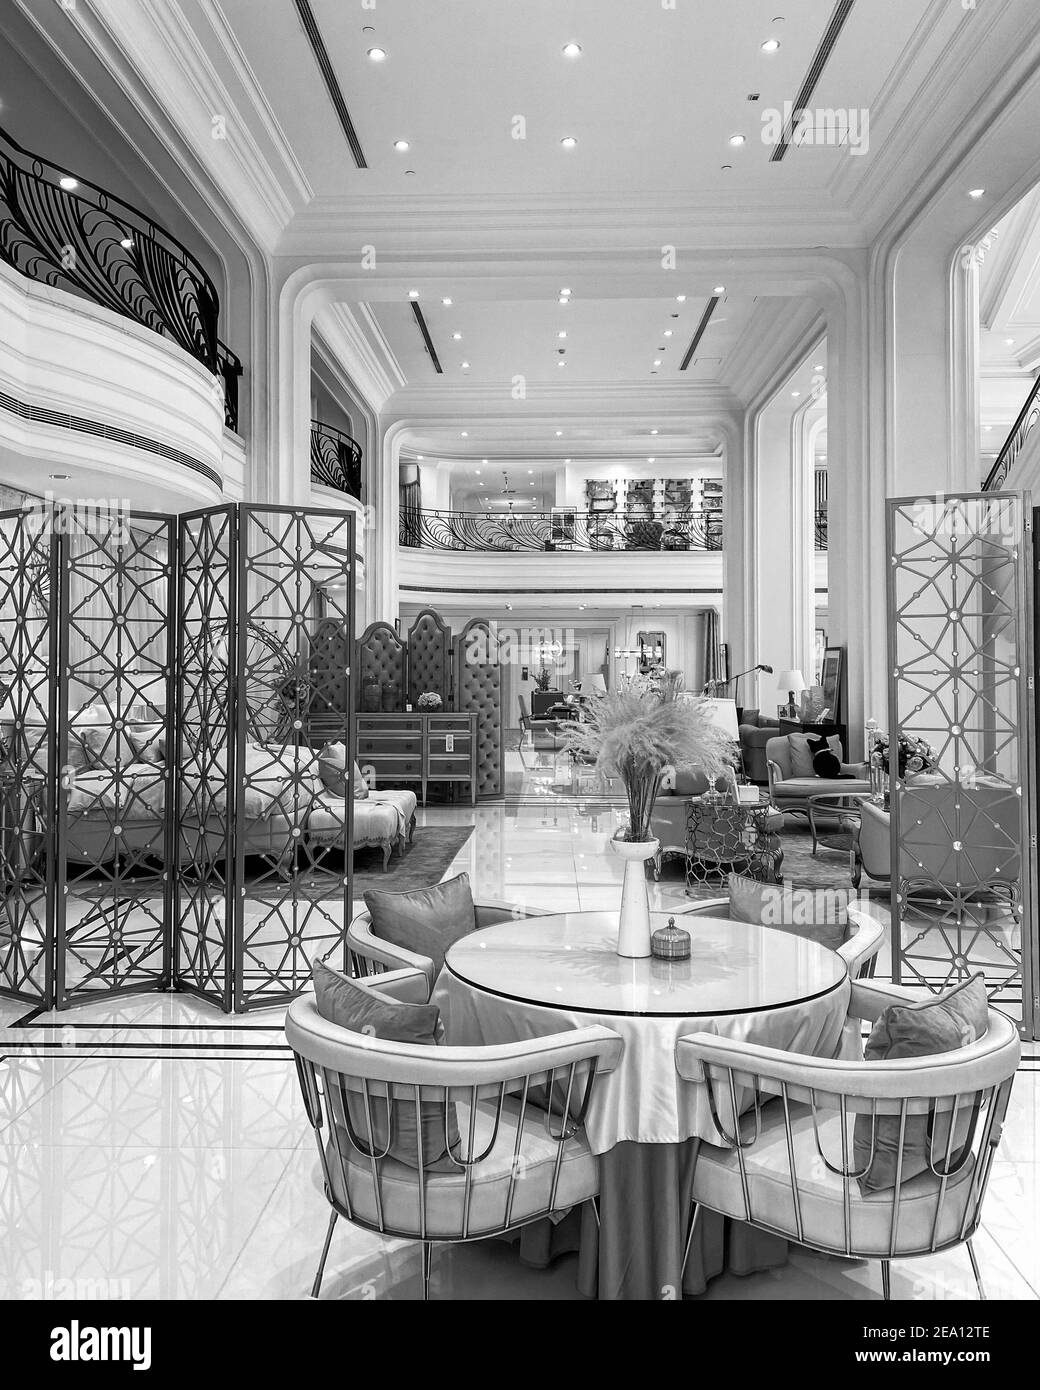 Increíble diseño interior de casa de té restaurante dúplex o elegante tienda de muebles. Hermosa mesa redonda en frente con una bonita decoración rosa. Foto de stock